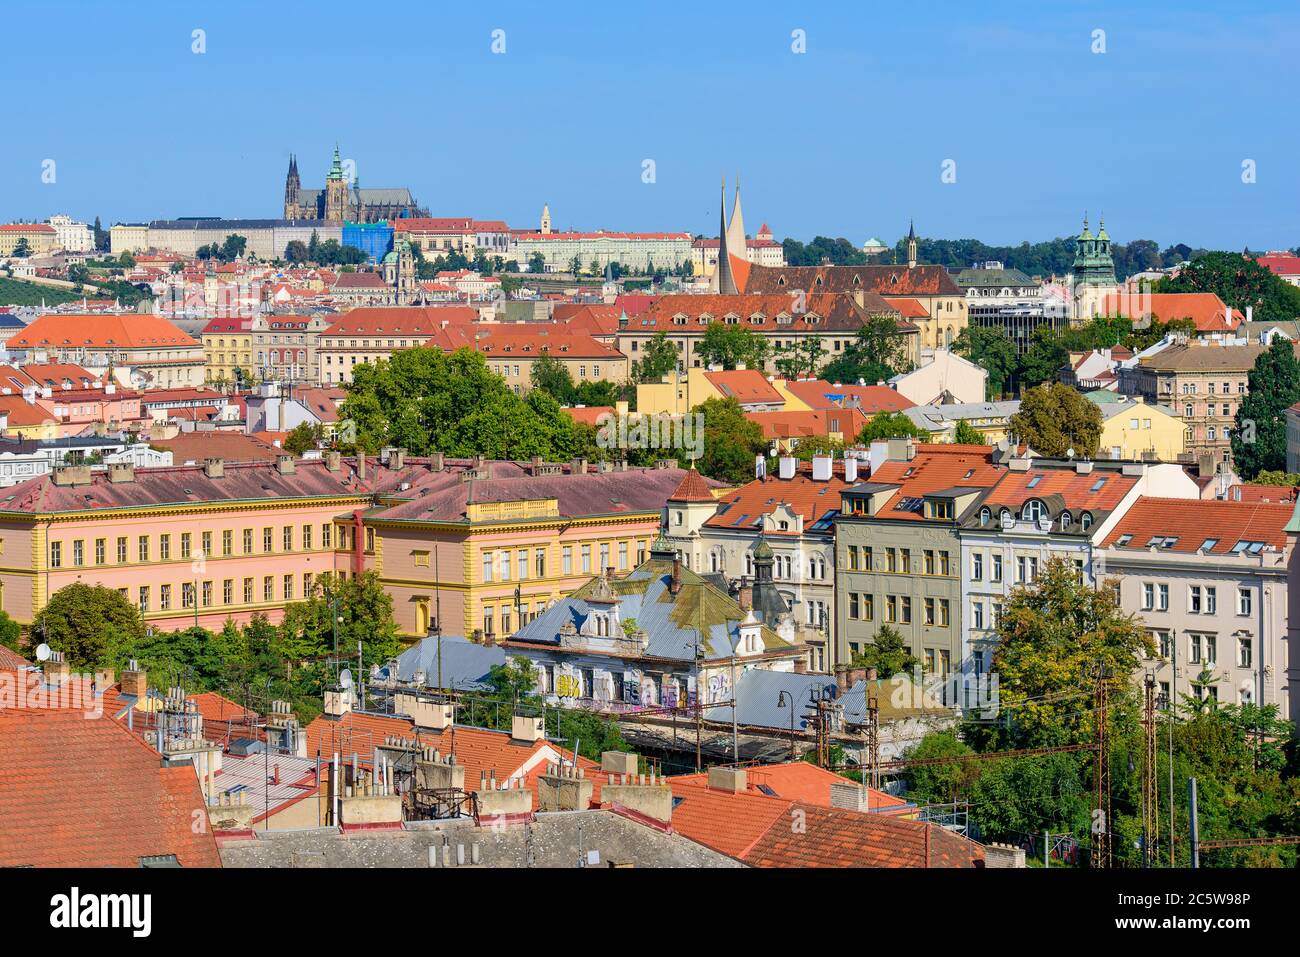 Vue sur les bâtiments traditionnels et la vieille ville de Prague, République tchèque Banque D'Images